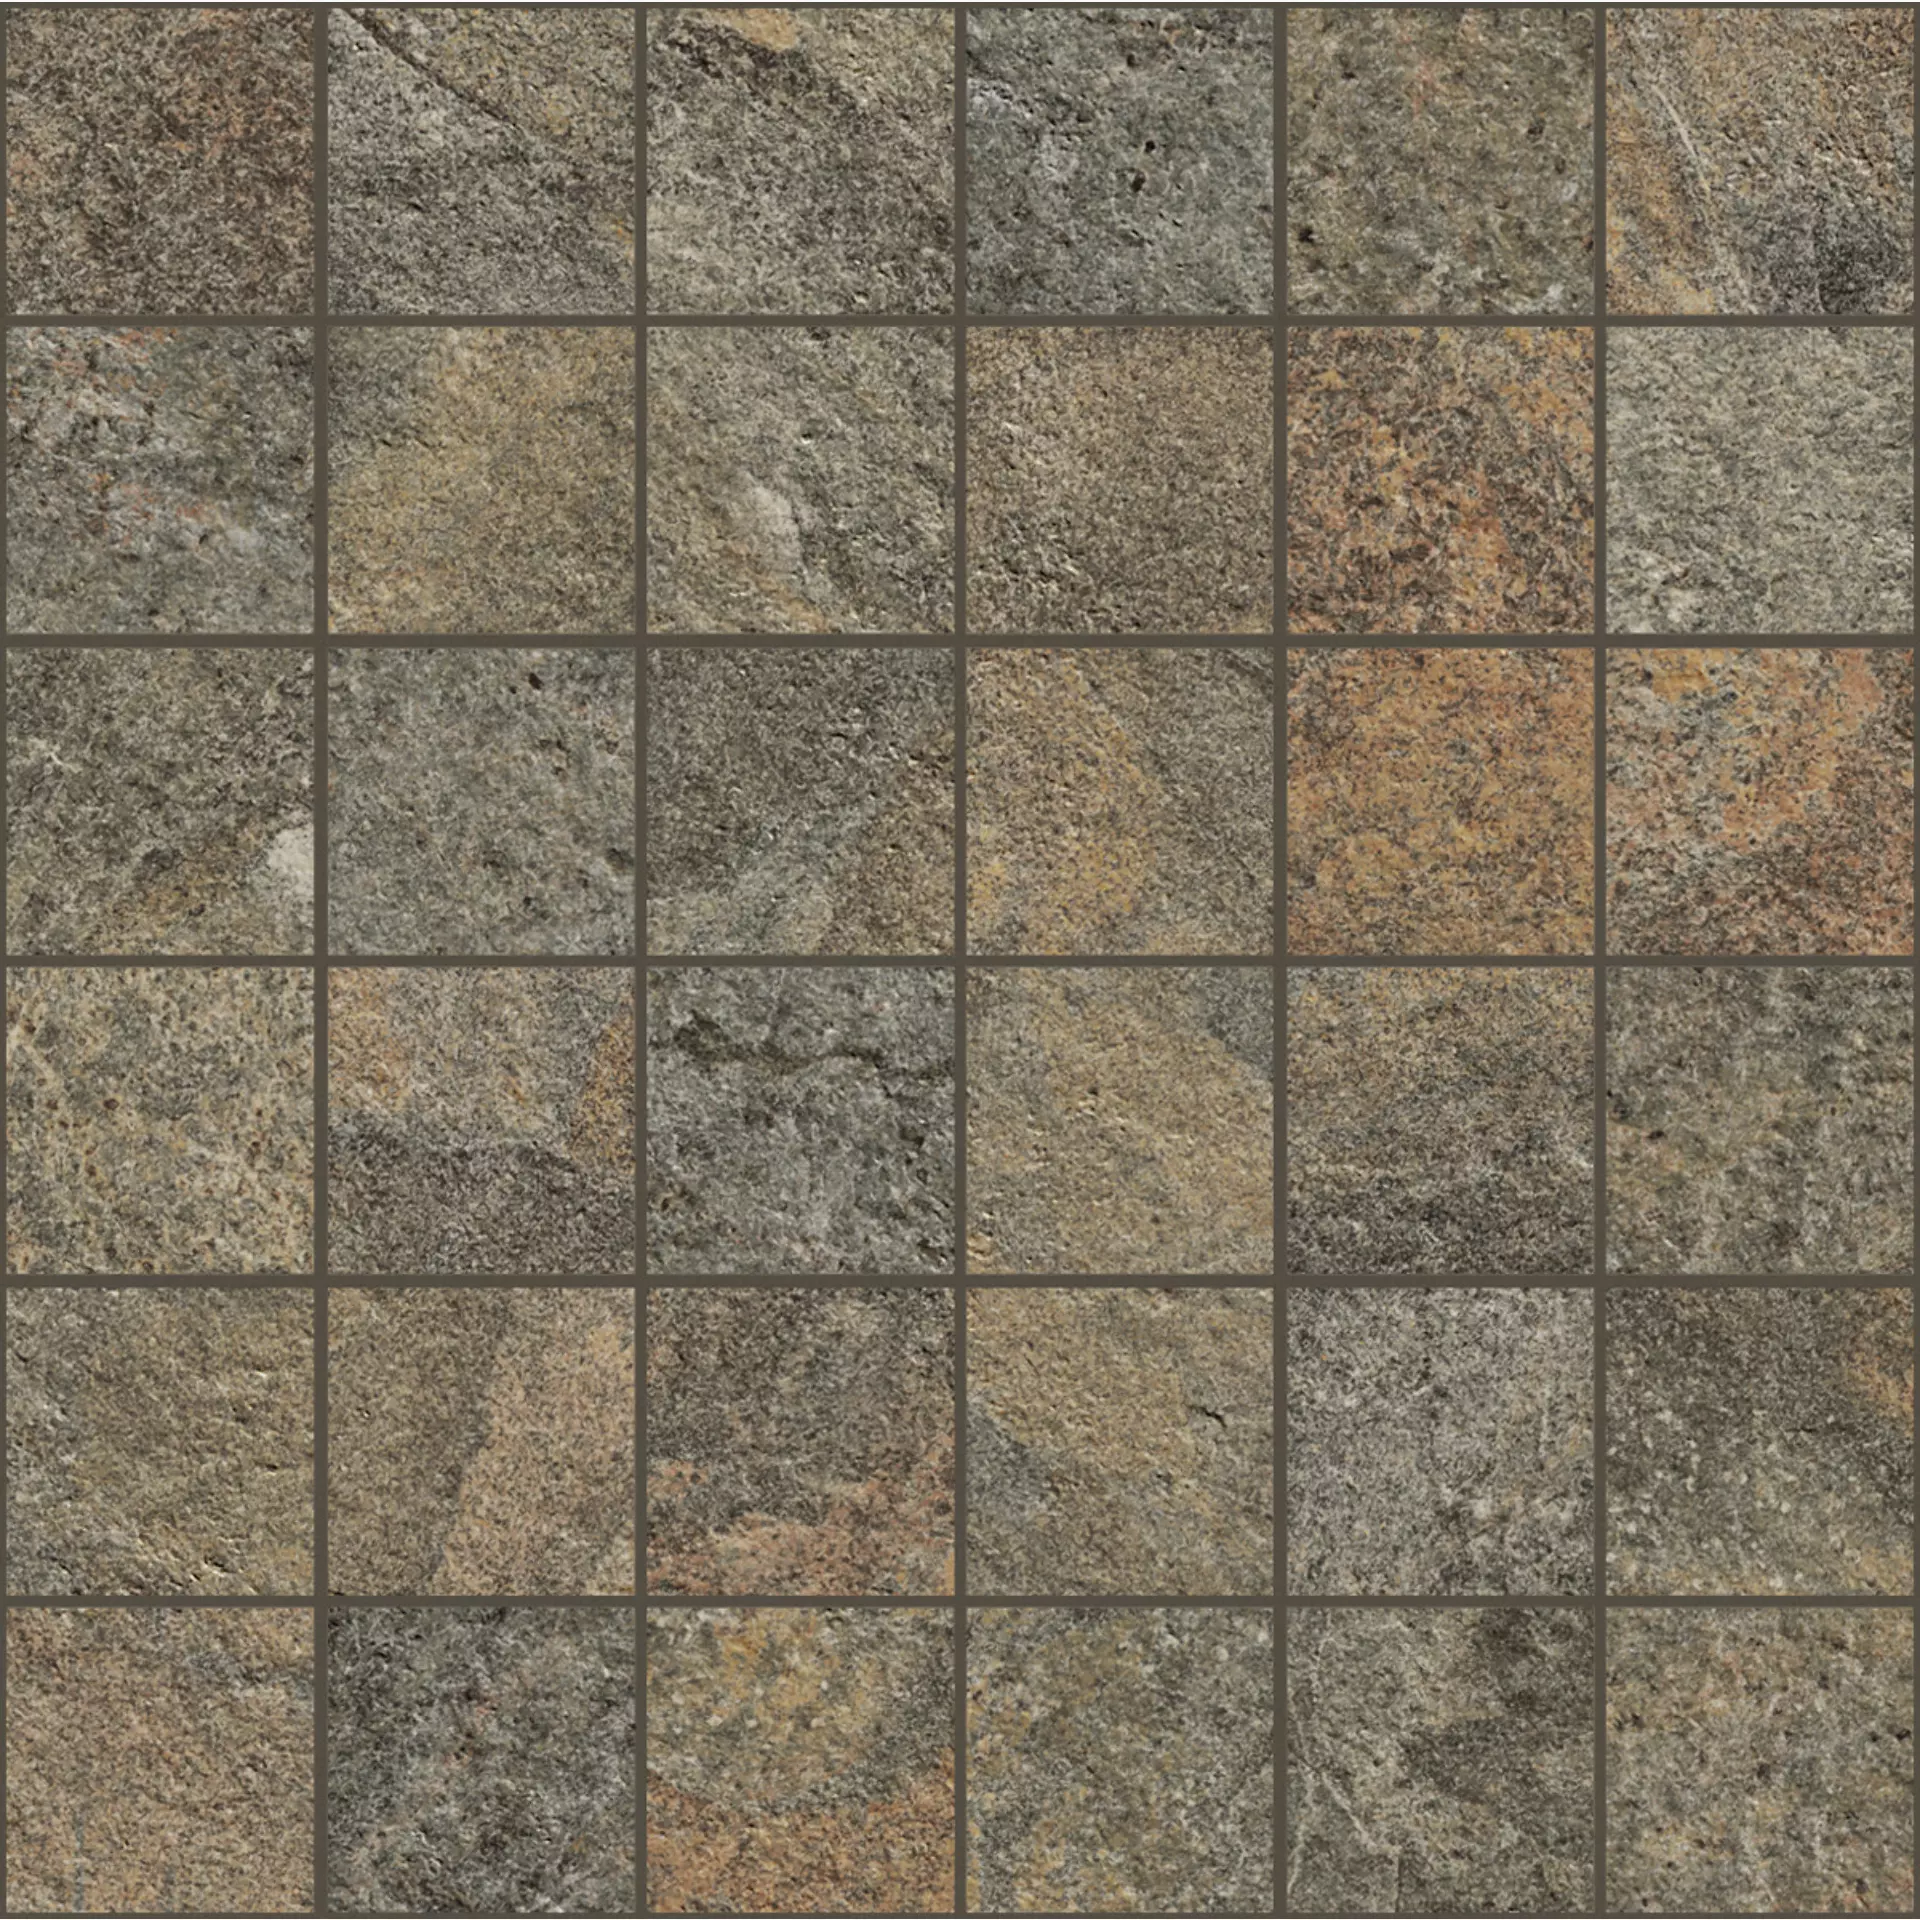 Bodenfliese,Wandfliese Marazzi Rocking Grey Naturale – Matt Grey M1HM matt natur 30x30cm Mosaik 9,5mm